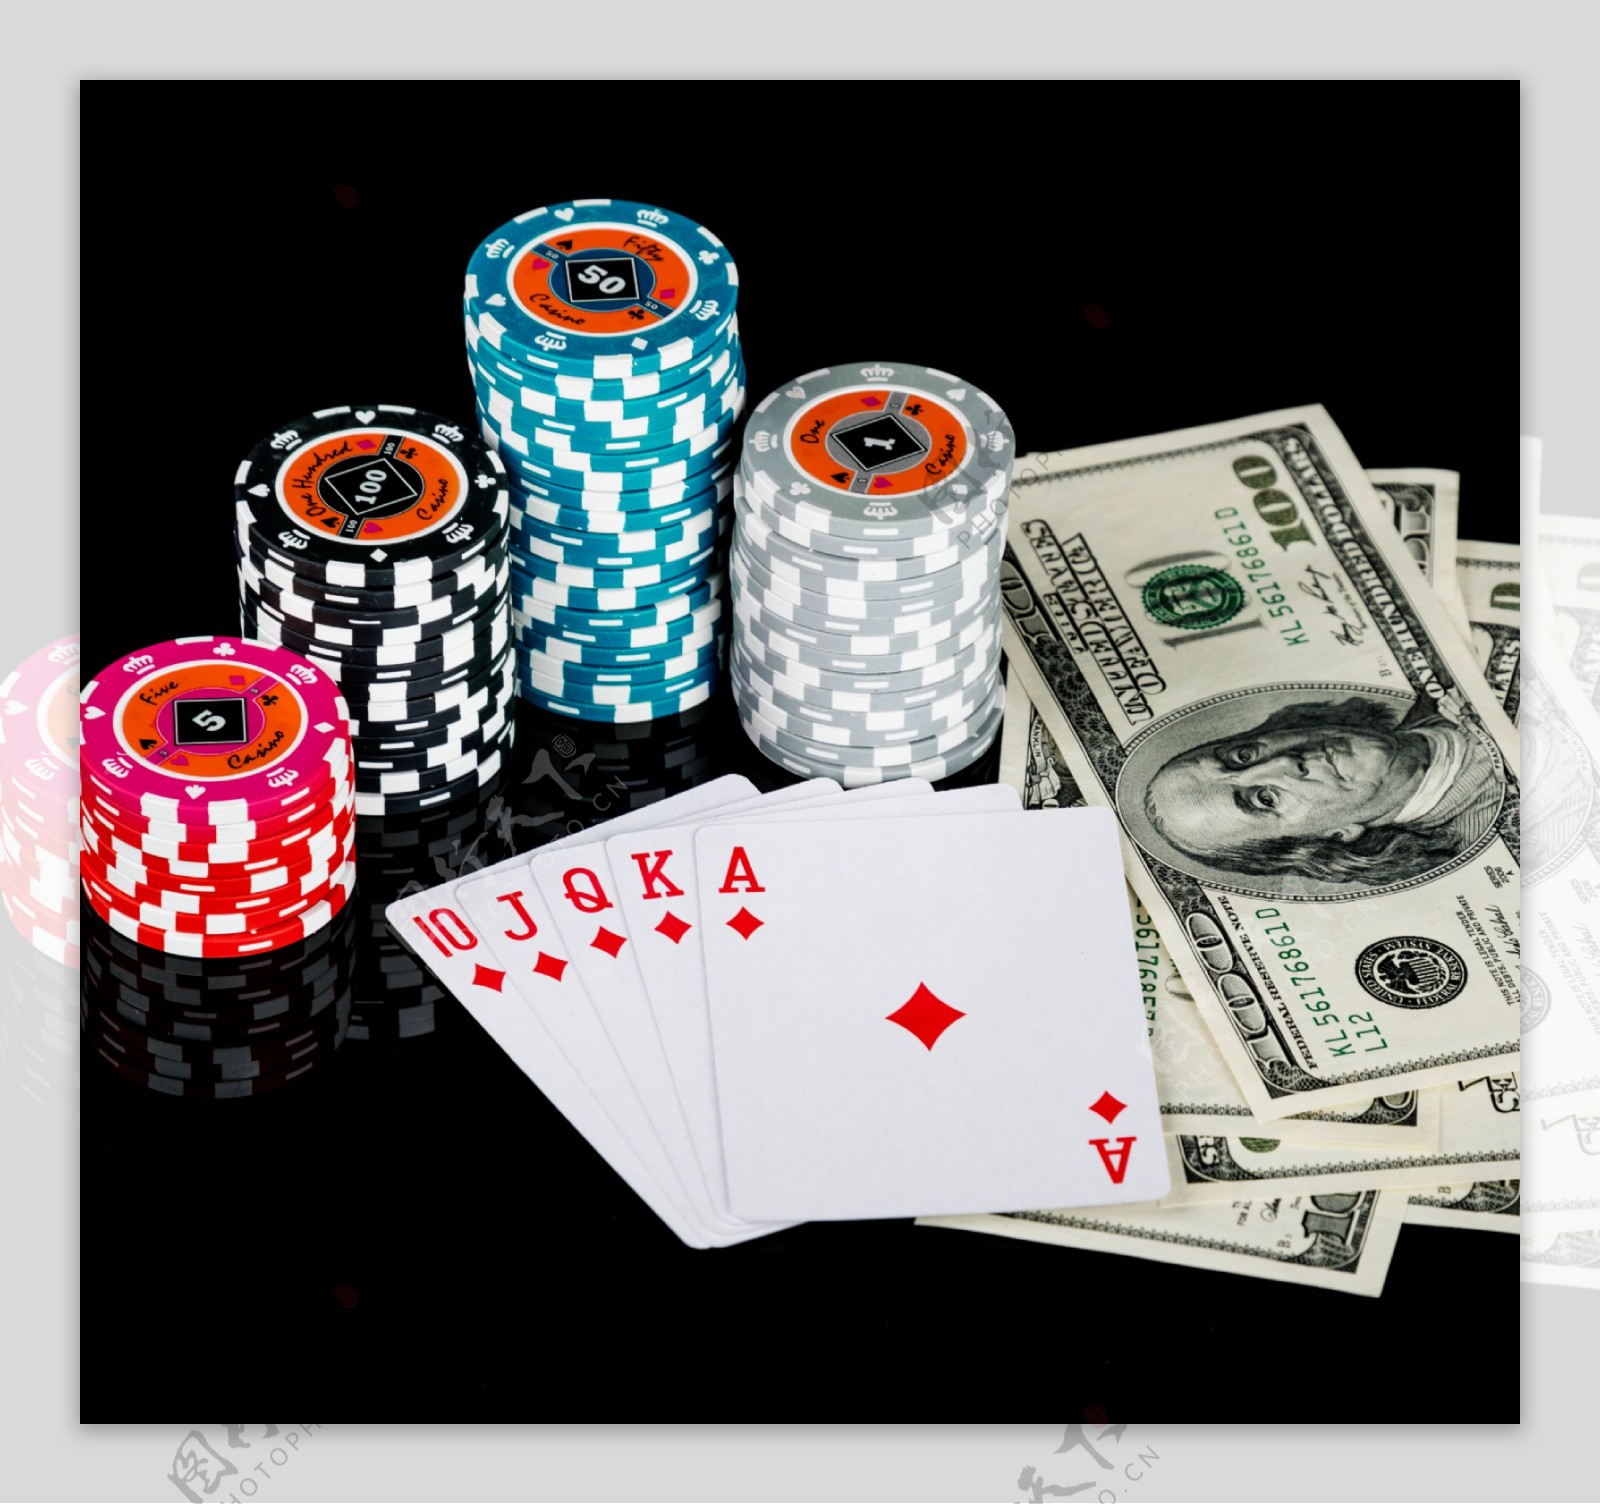 扑克赌博与筹码图片